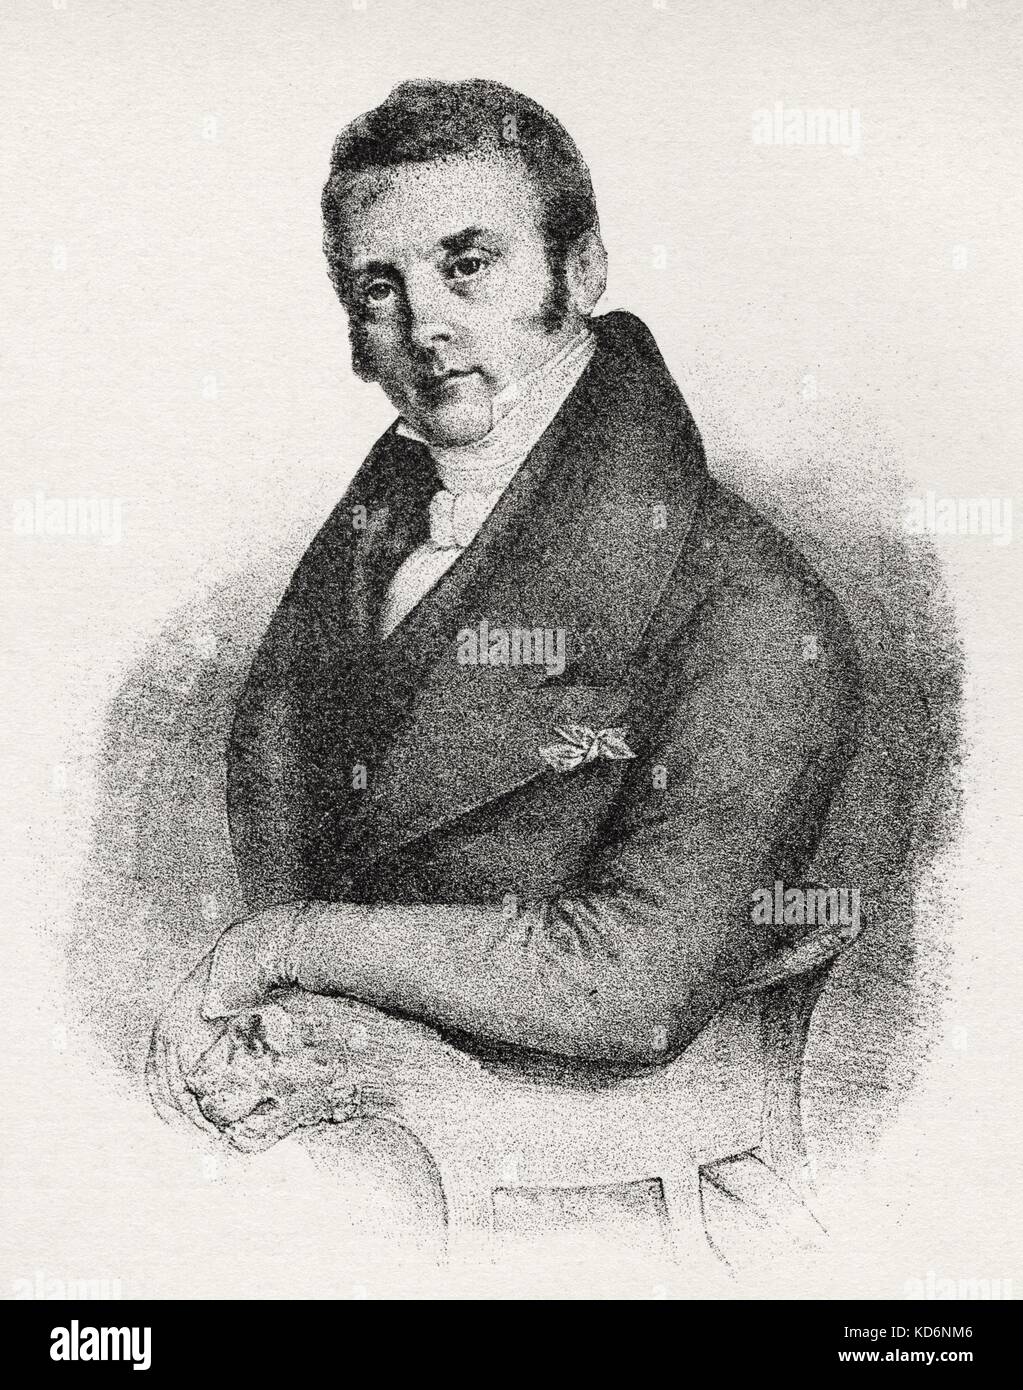 Daniel Francois Aubert, ritratto, 1832. Francese opera compositore 29 Gennaio 1782 - 13 maggio 1871. Amico di Meyerbeer. Foto Stock